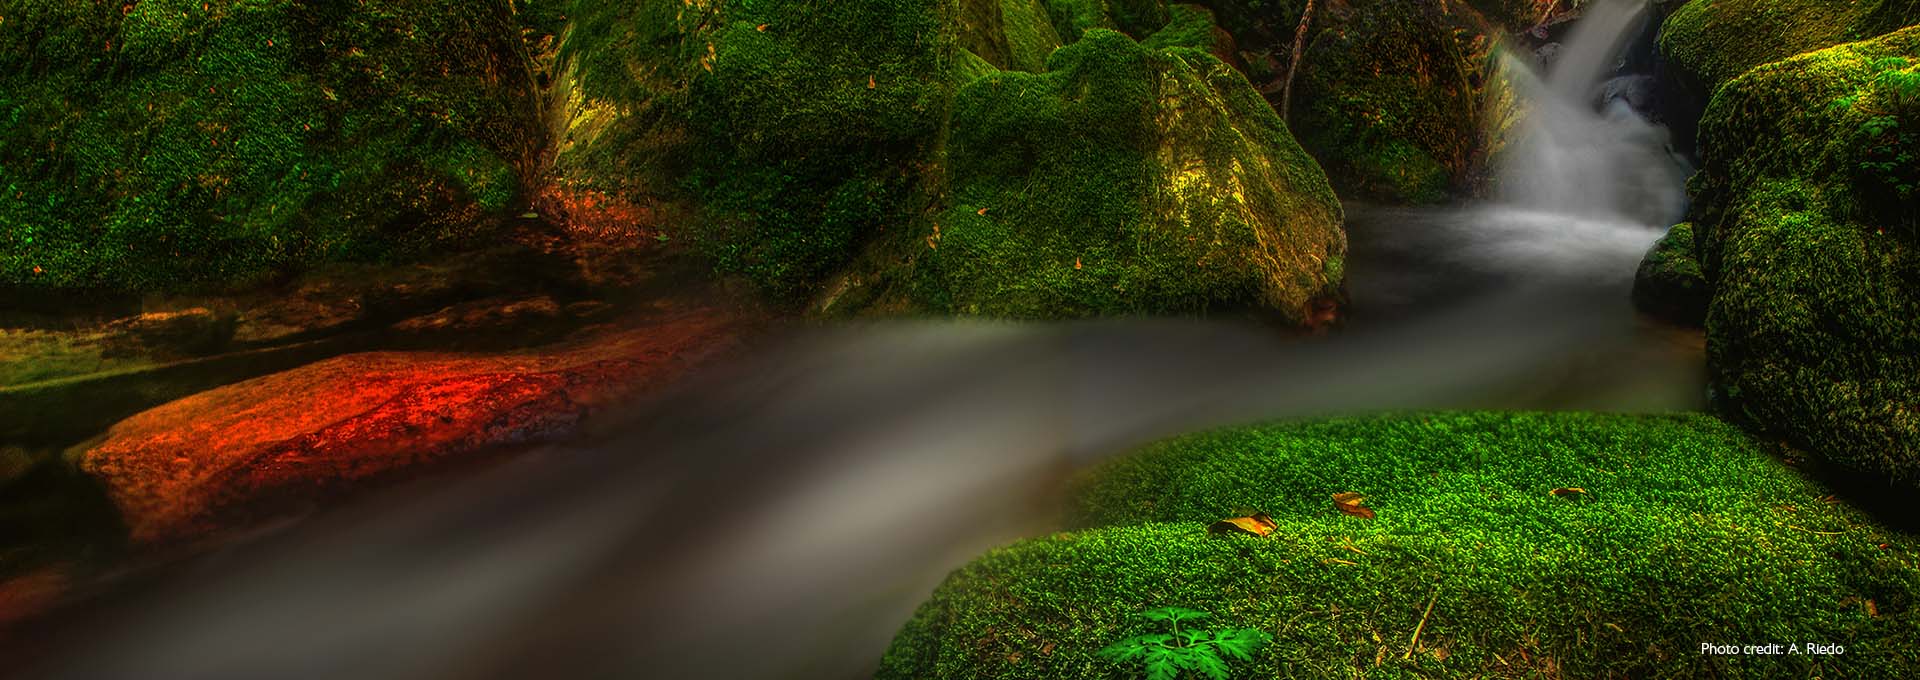 Изображение небольшого ручья между покрытыми мхом ярко-зелеными камнями, сфотографированное пользователями слуховых аппаратов Bernafon Alpha